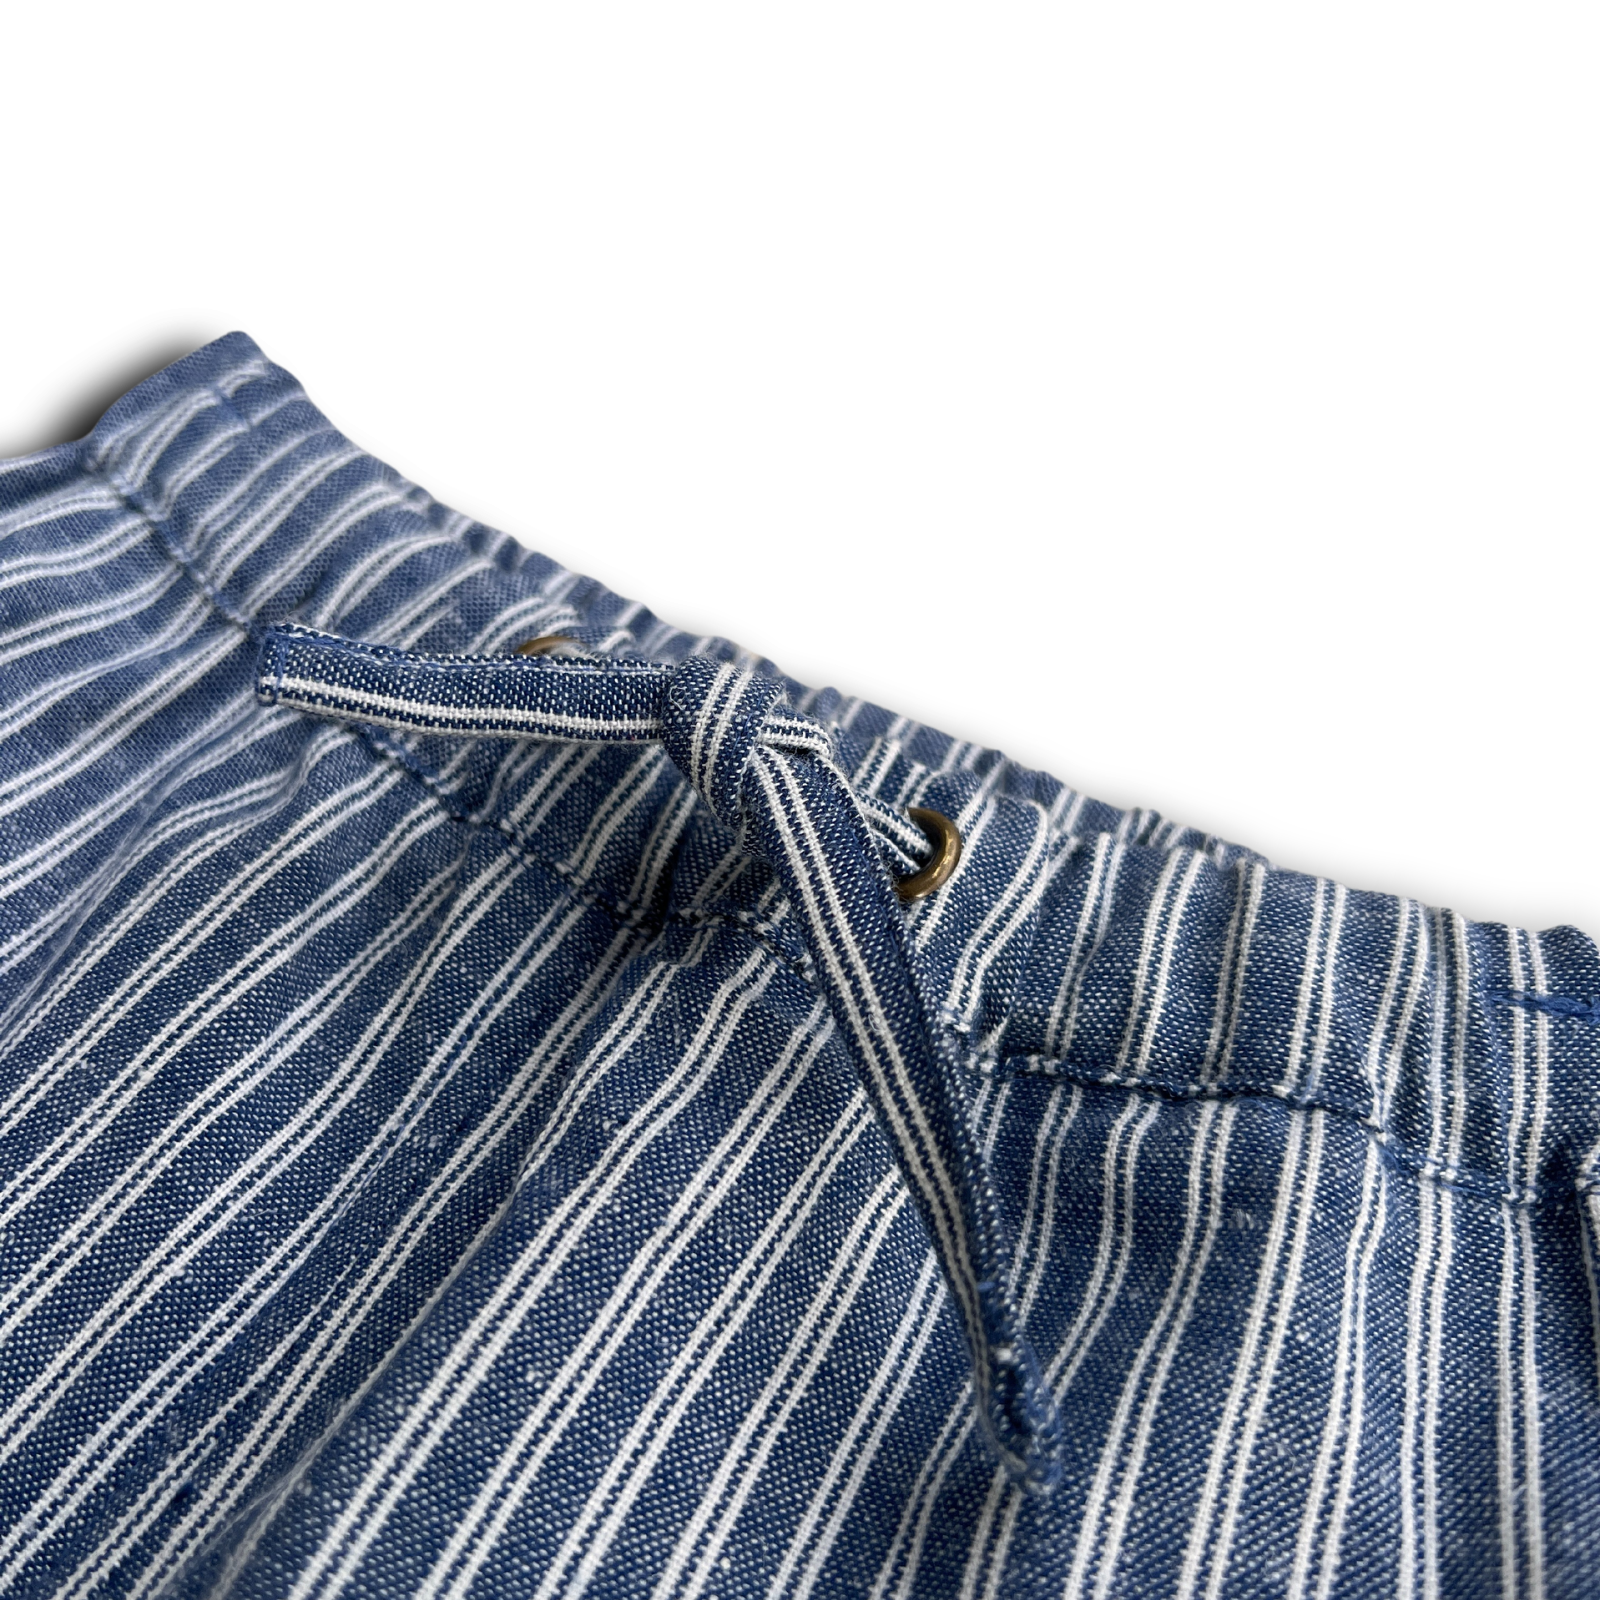 2T Blue Engineer Stripe Pants SAMPLE